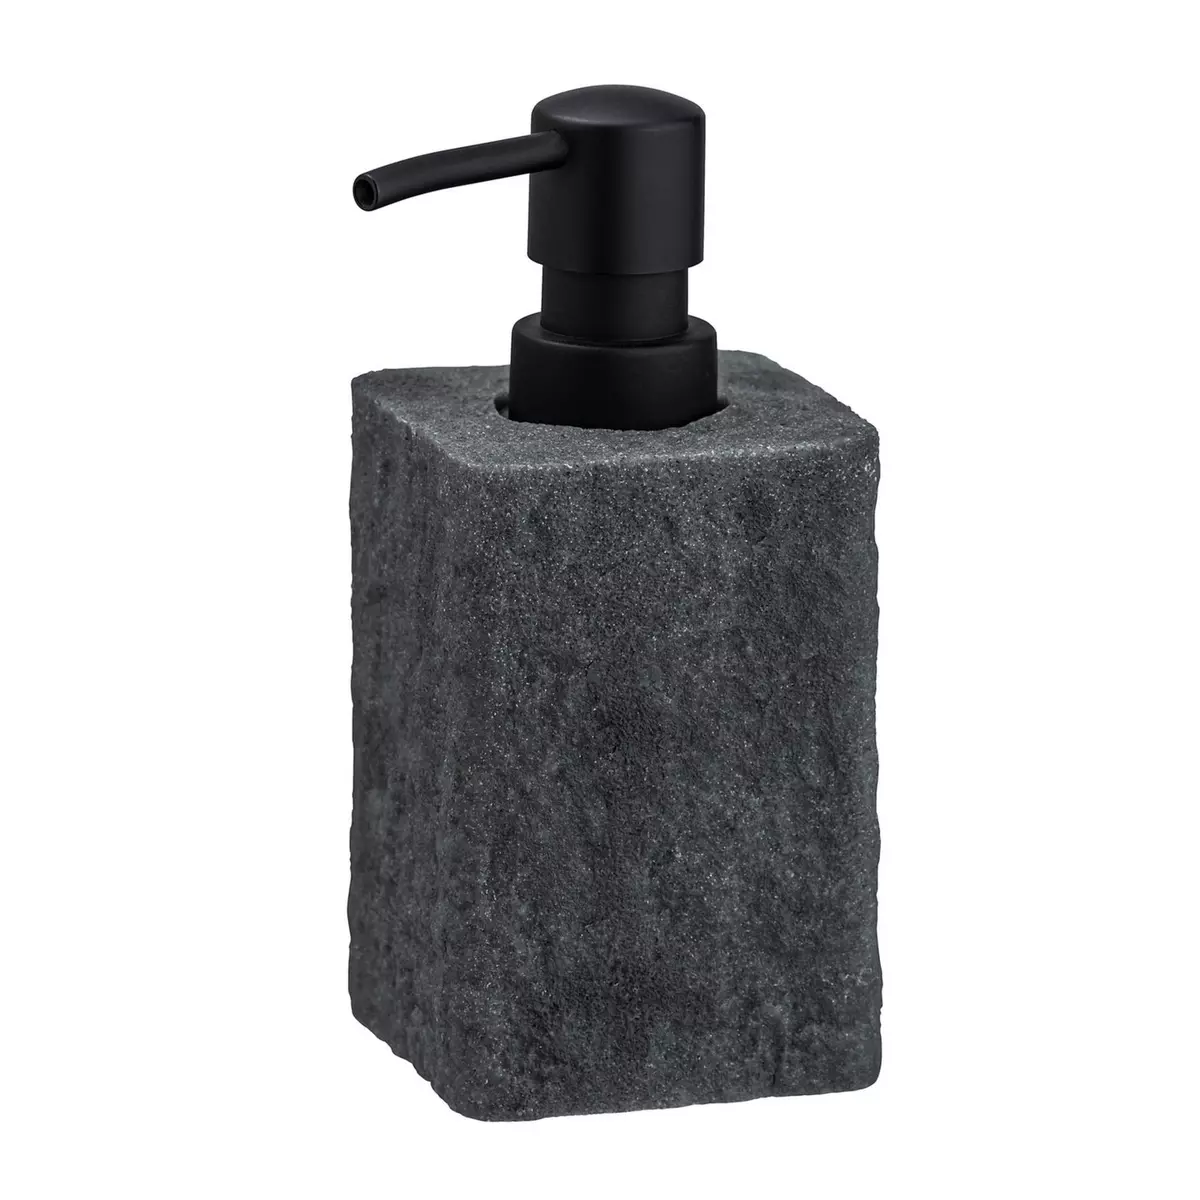 Wenko Distributeur de savon design pierre Villata - Gris anthracite